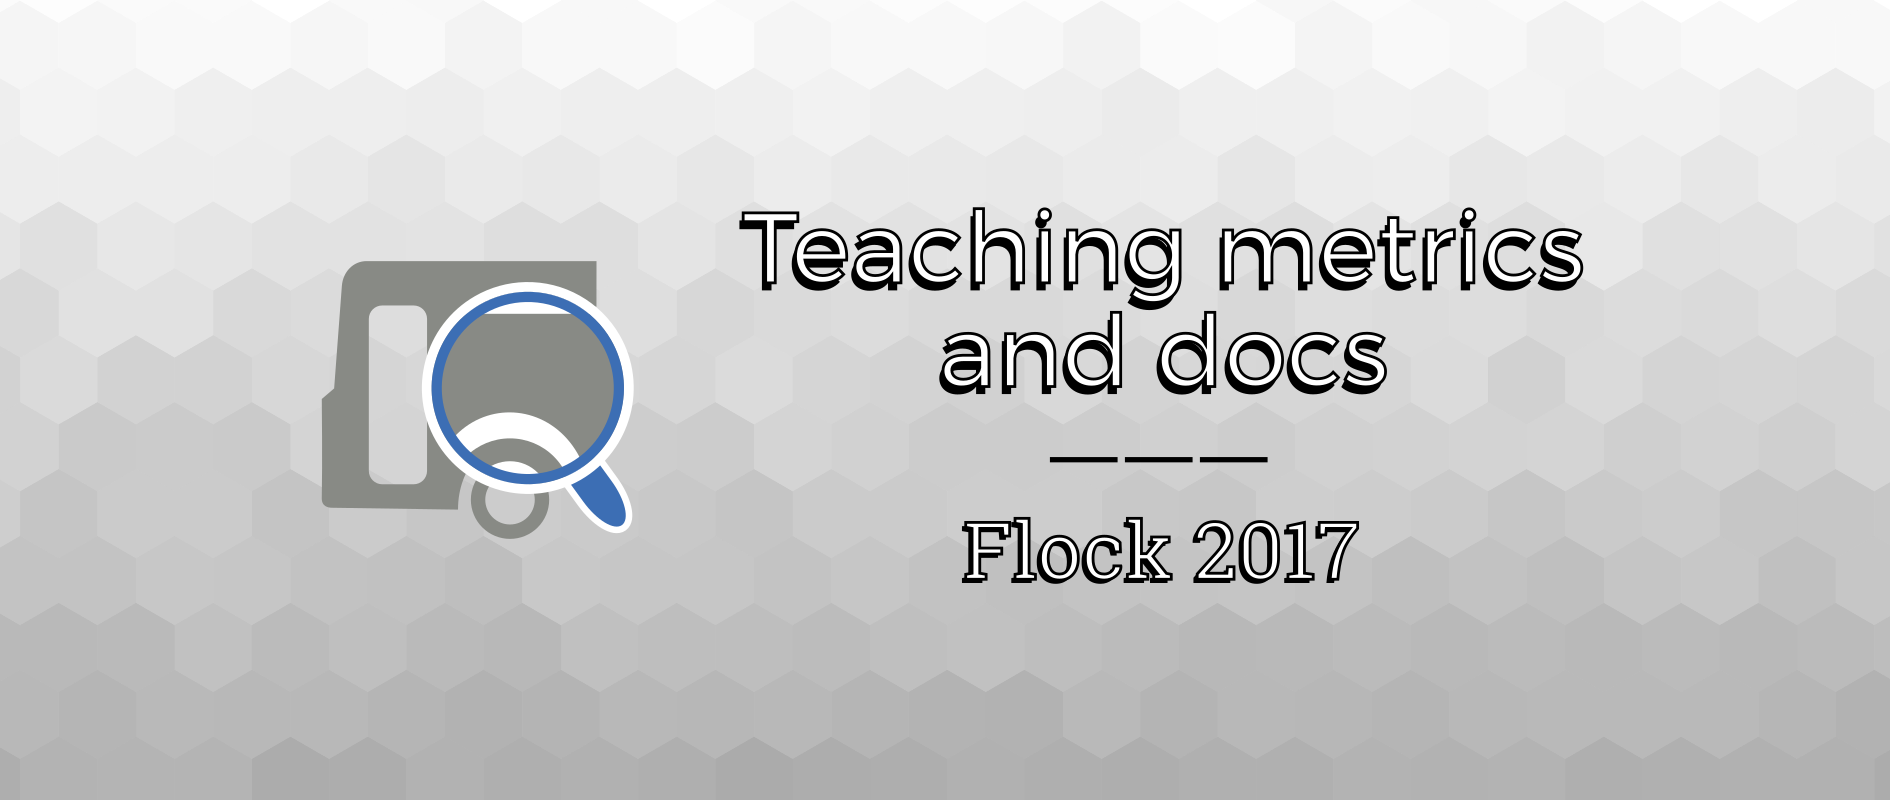 Teaching metrics and contributor docs at Flock 2017